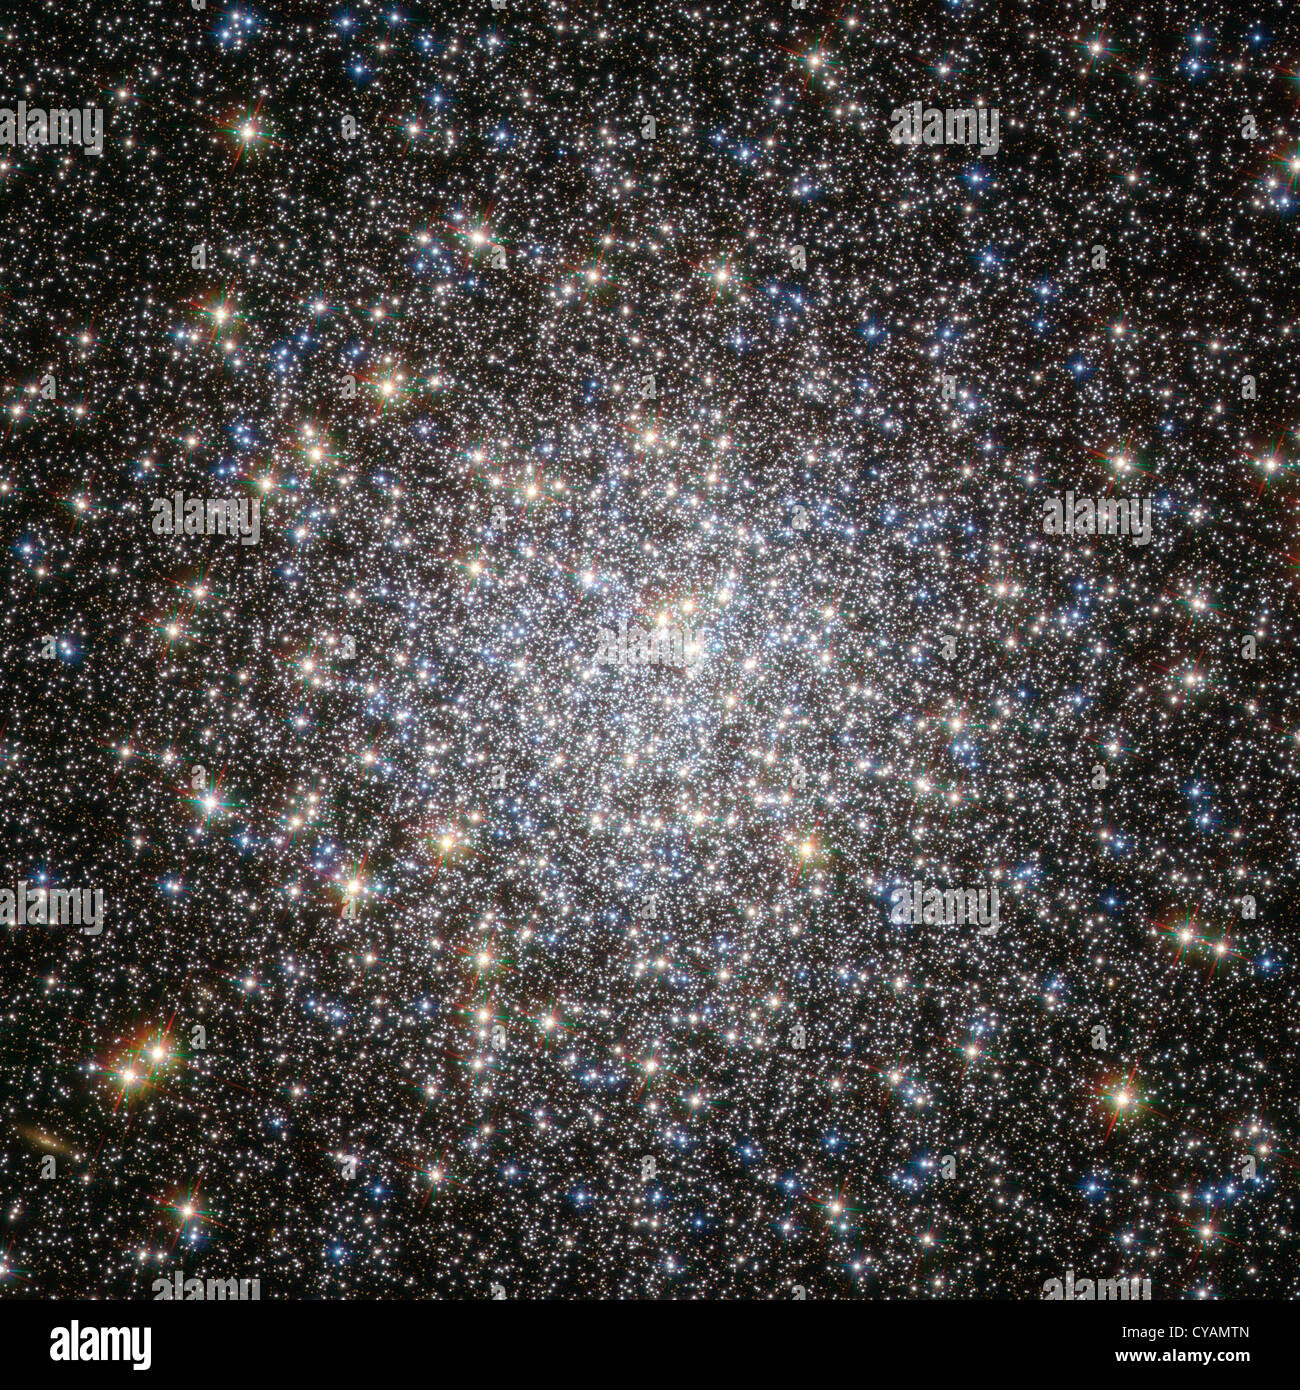 globular cluster Messier 5, Stock Photo